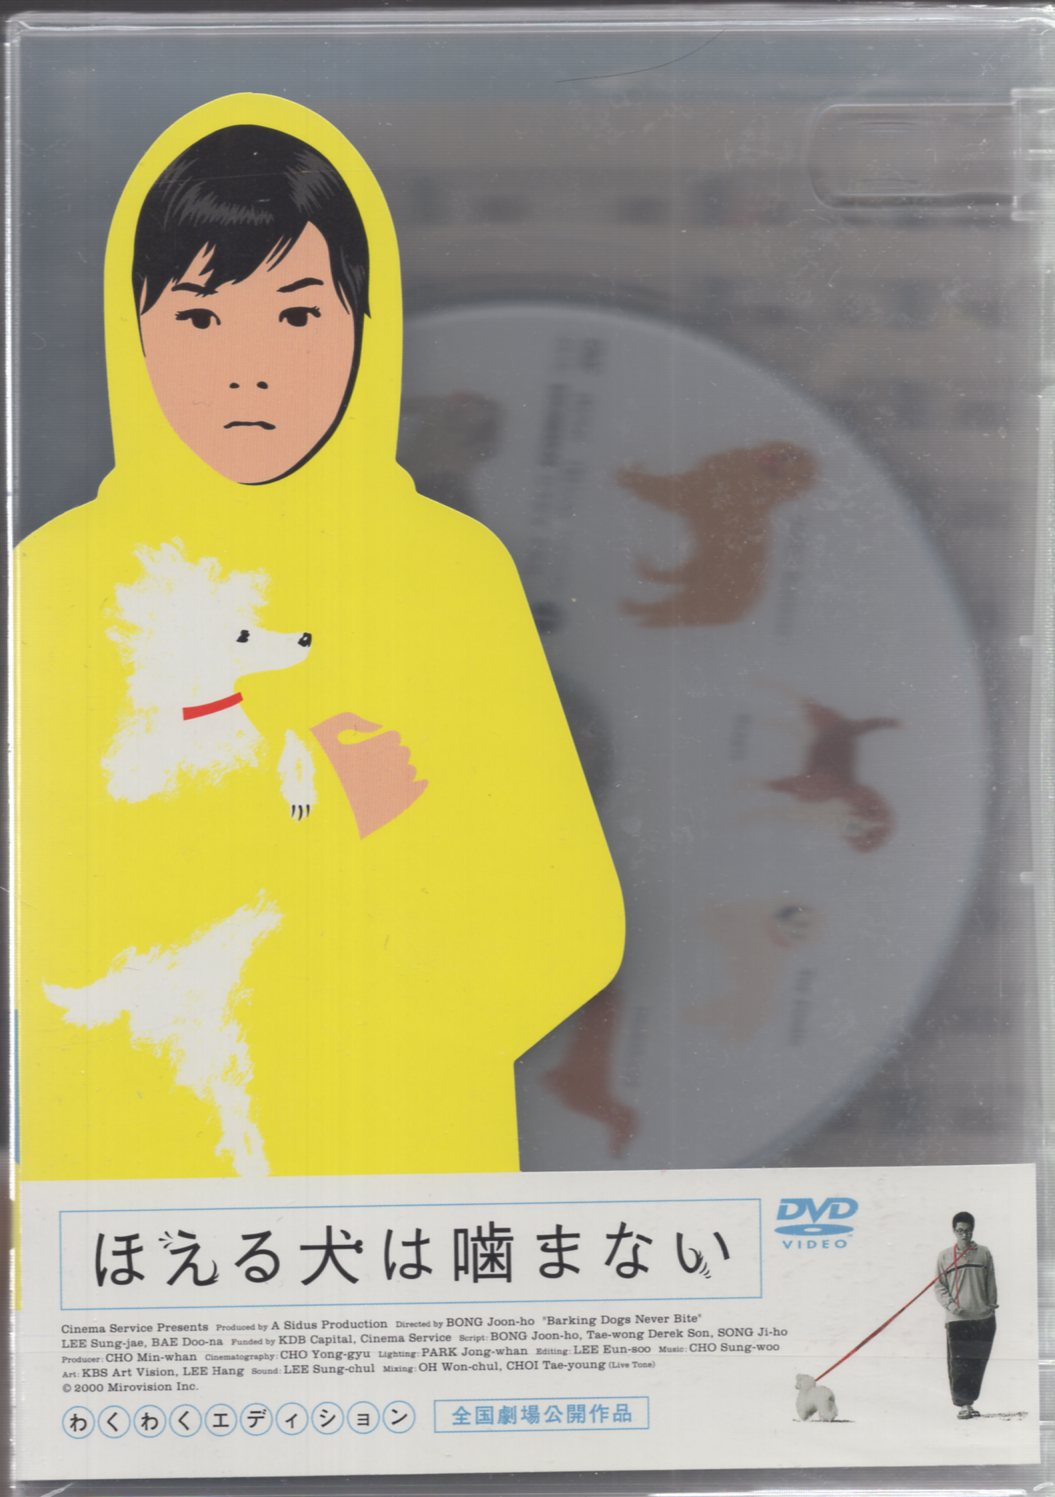 ほえる犬は噛まない [Blu-ray] [Blu-ray] ペ・ドゥナ、 イ・ソンジェ、 キム・ホジョン、 コ ・スヒ、 ピョン・ヒボ; ポン・ジュノ